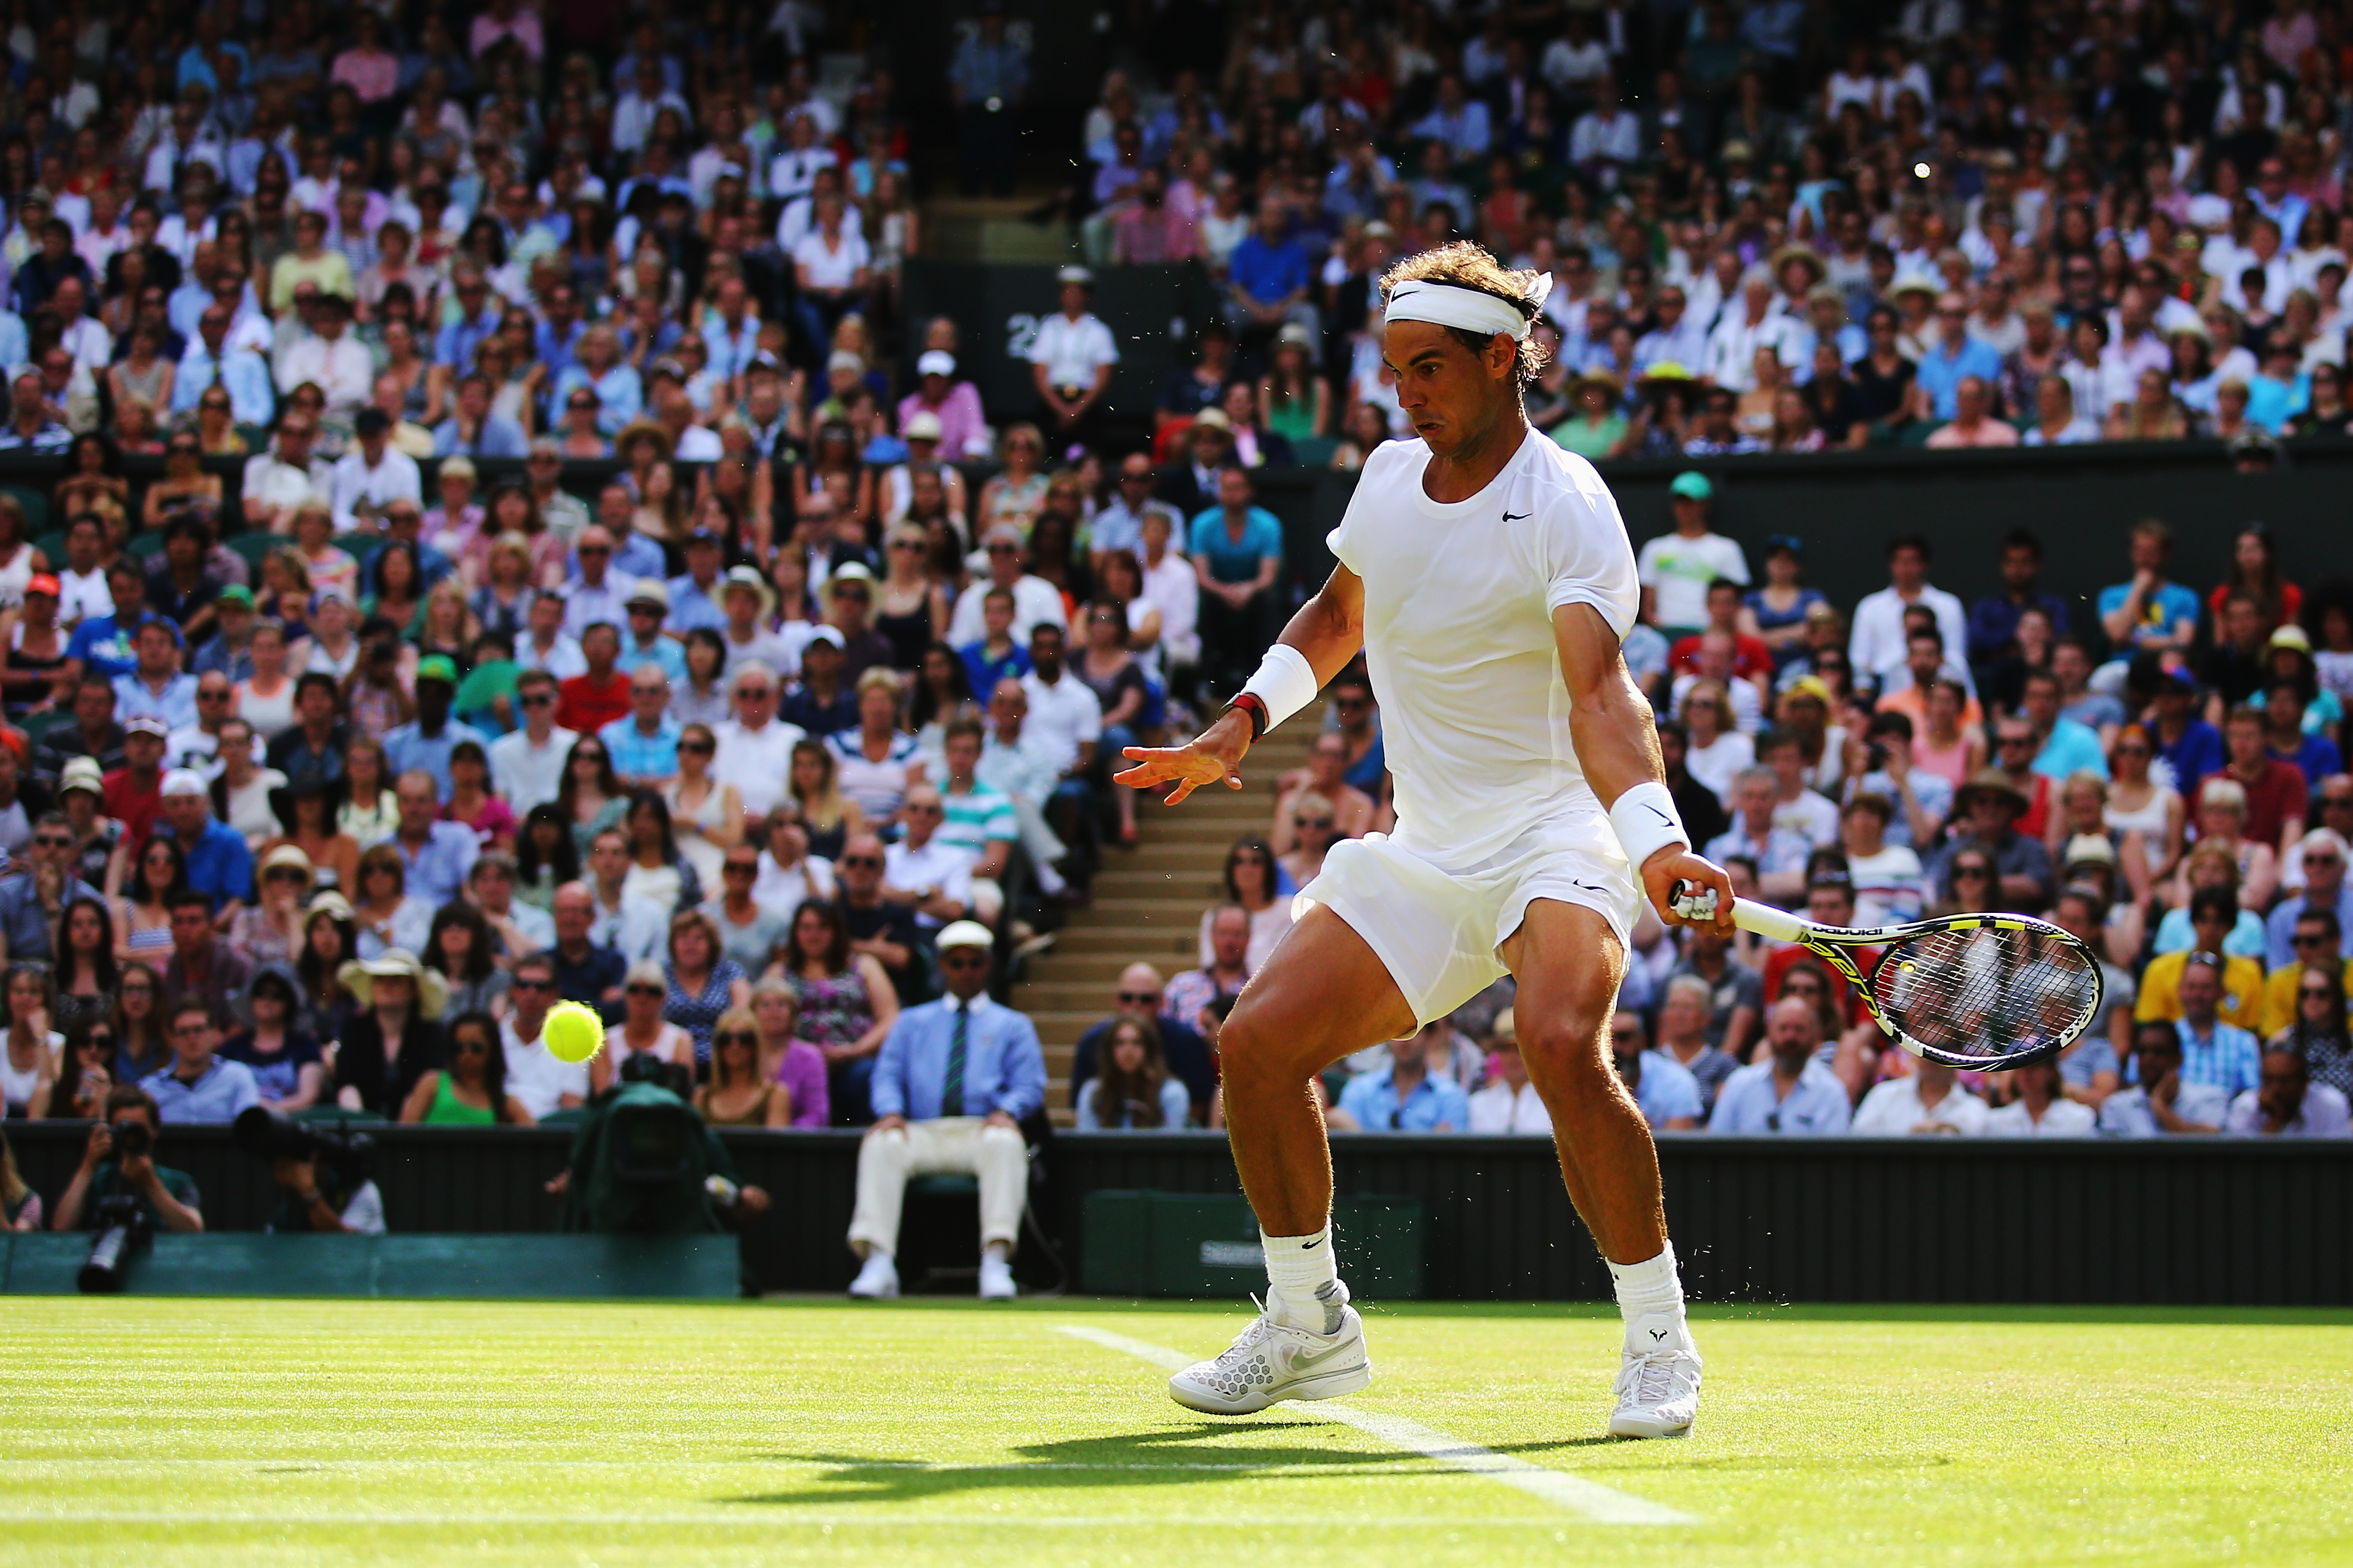 Wimbledon Tennis 2014 Live Stream Online, Match Times, Schedule: Rafael